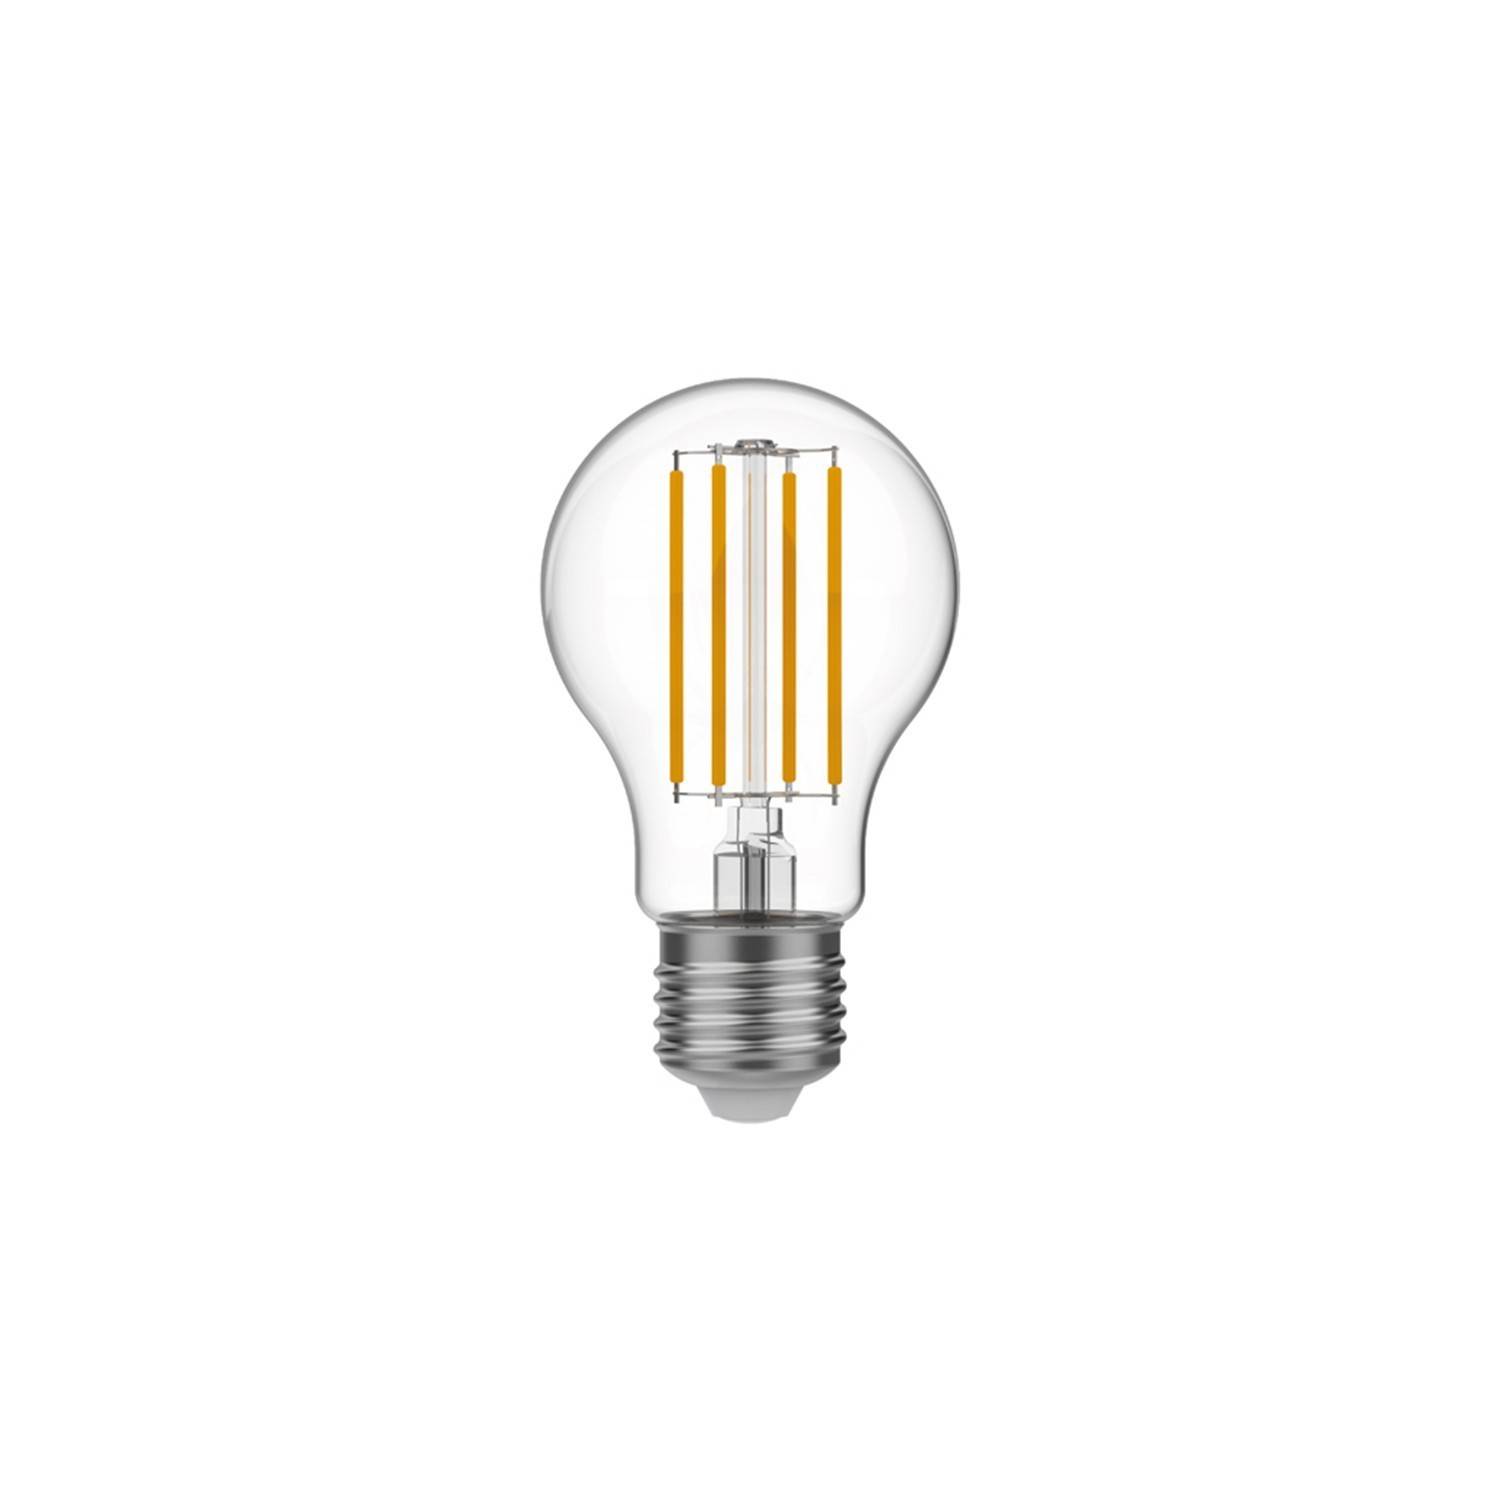 Lâmpada LED Transparente A60 7W 806Lm E27 2700K Regulável - T01